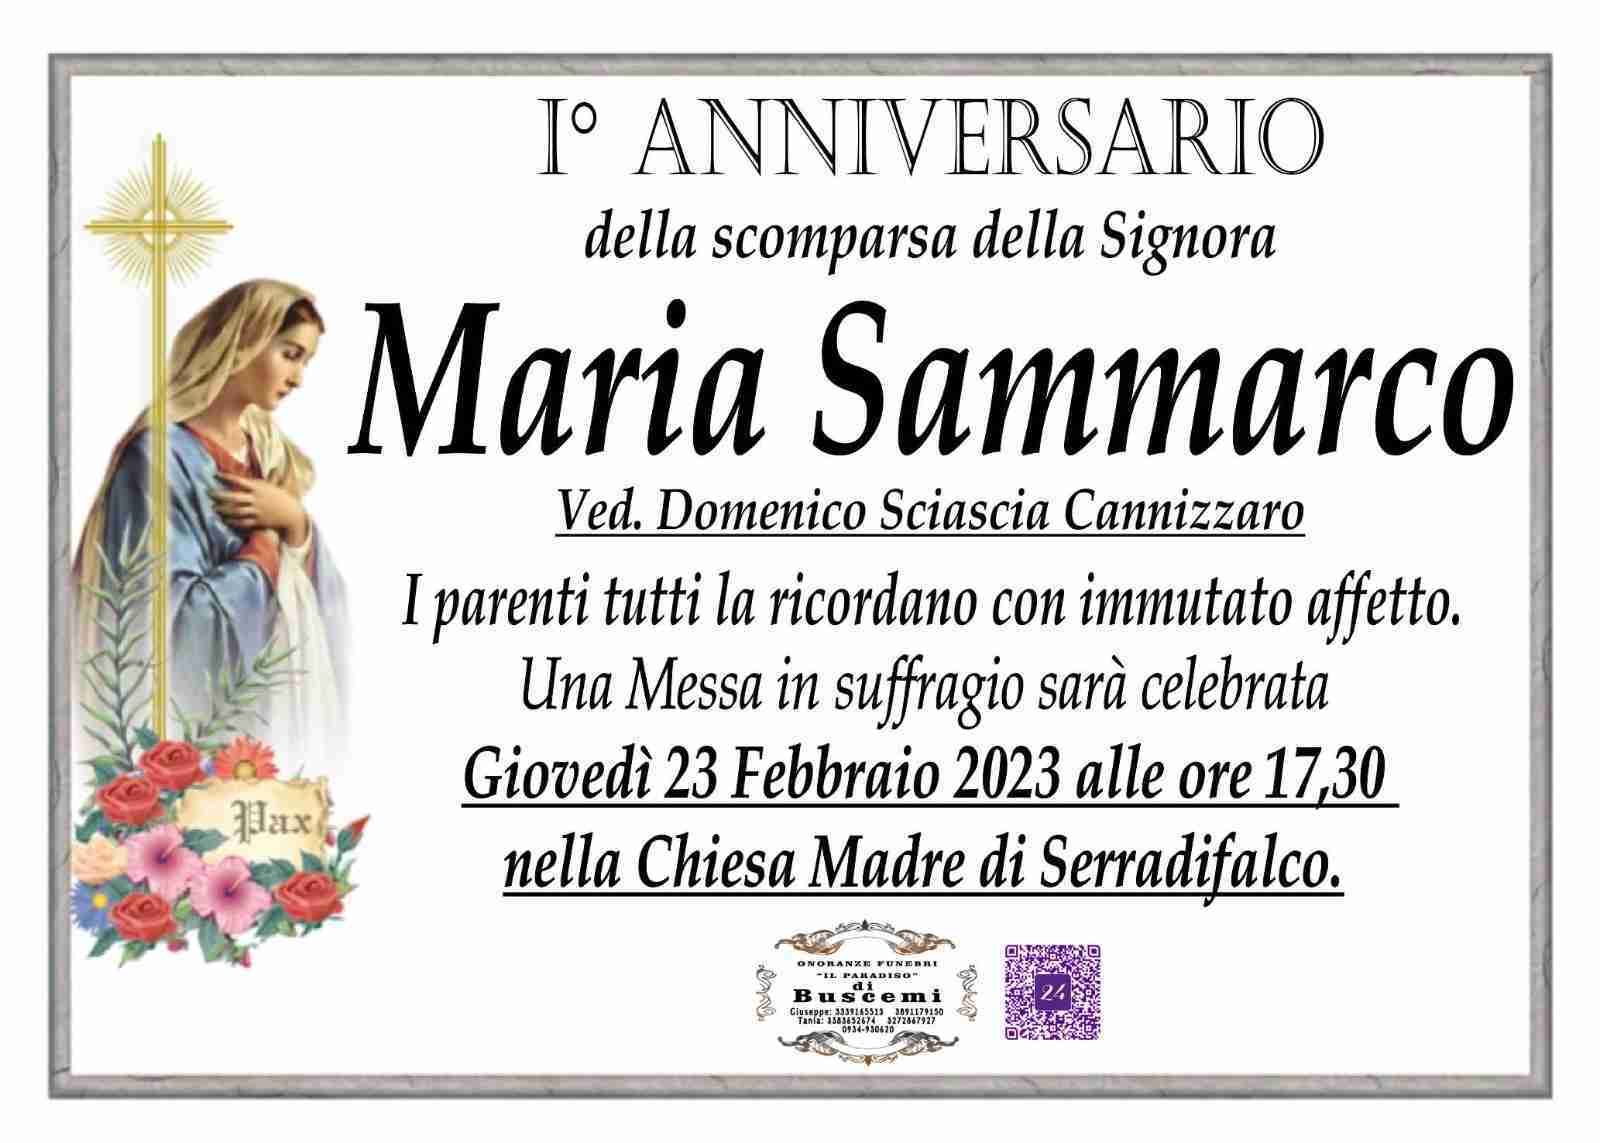 Maria Sammarco